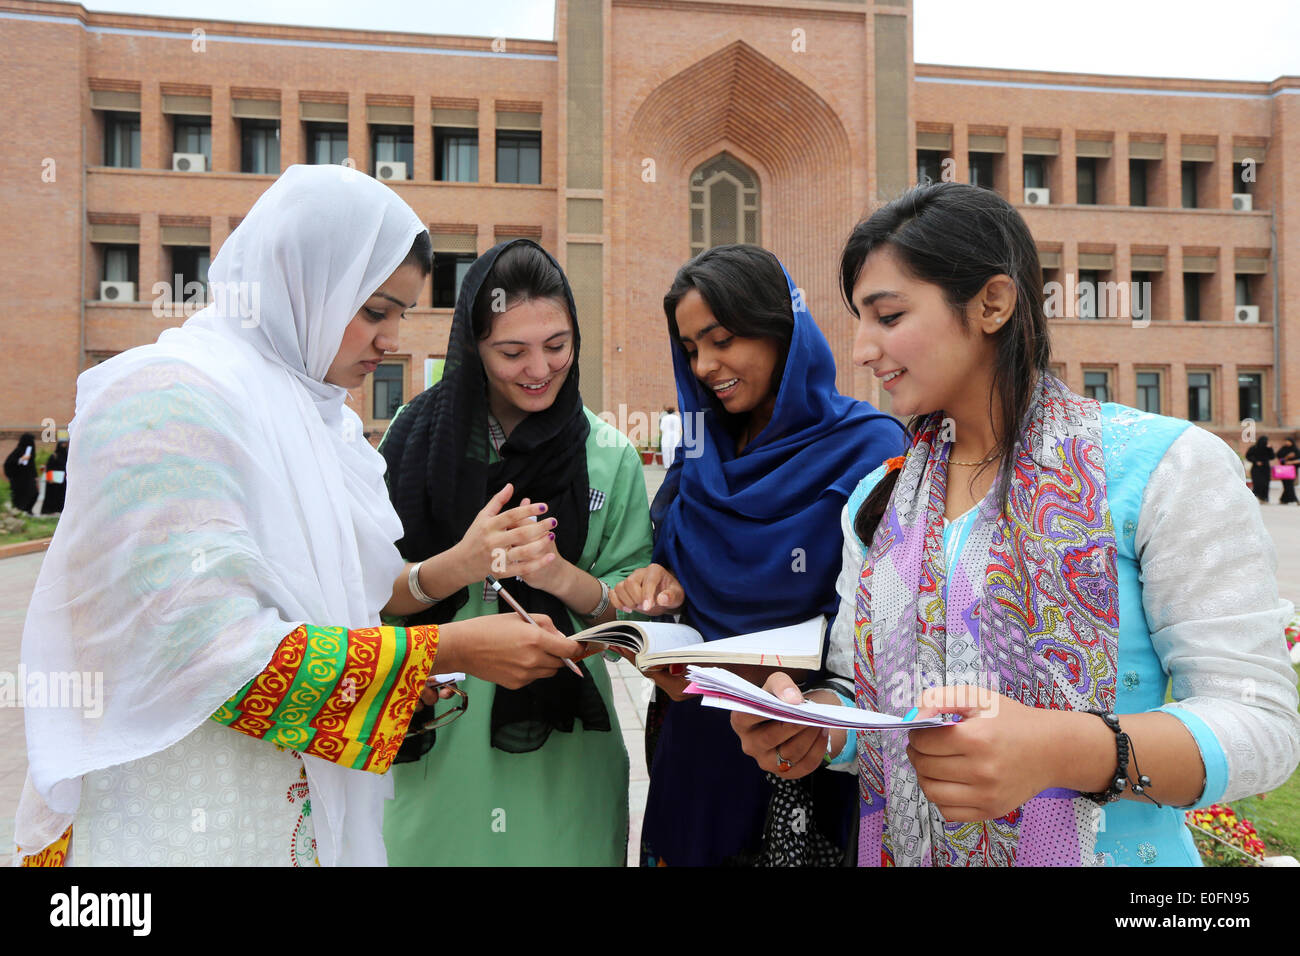 Students of the International Islamic University, Female Campus premises, Islamabad, Pakistan Stock Photo